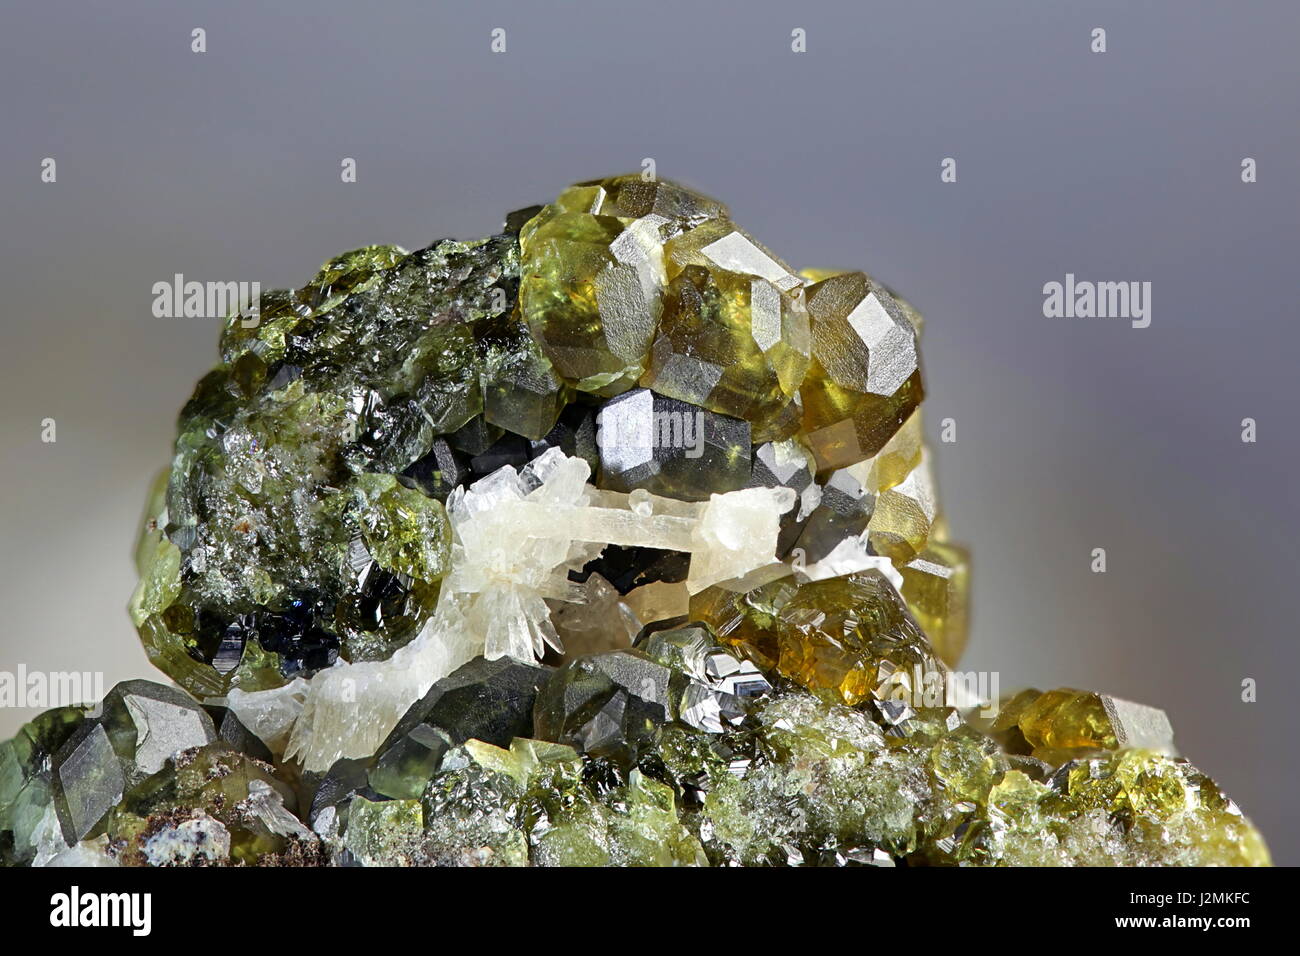 La pierre précieuse vert démantoïde est variété de l'andradite minéral, un membre de la groupe de minéraux grenat. L'échantillon est de l'Oural, Russie Banque D'Images